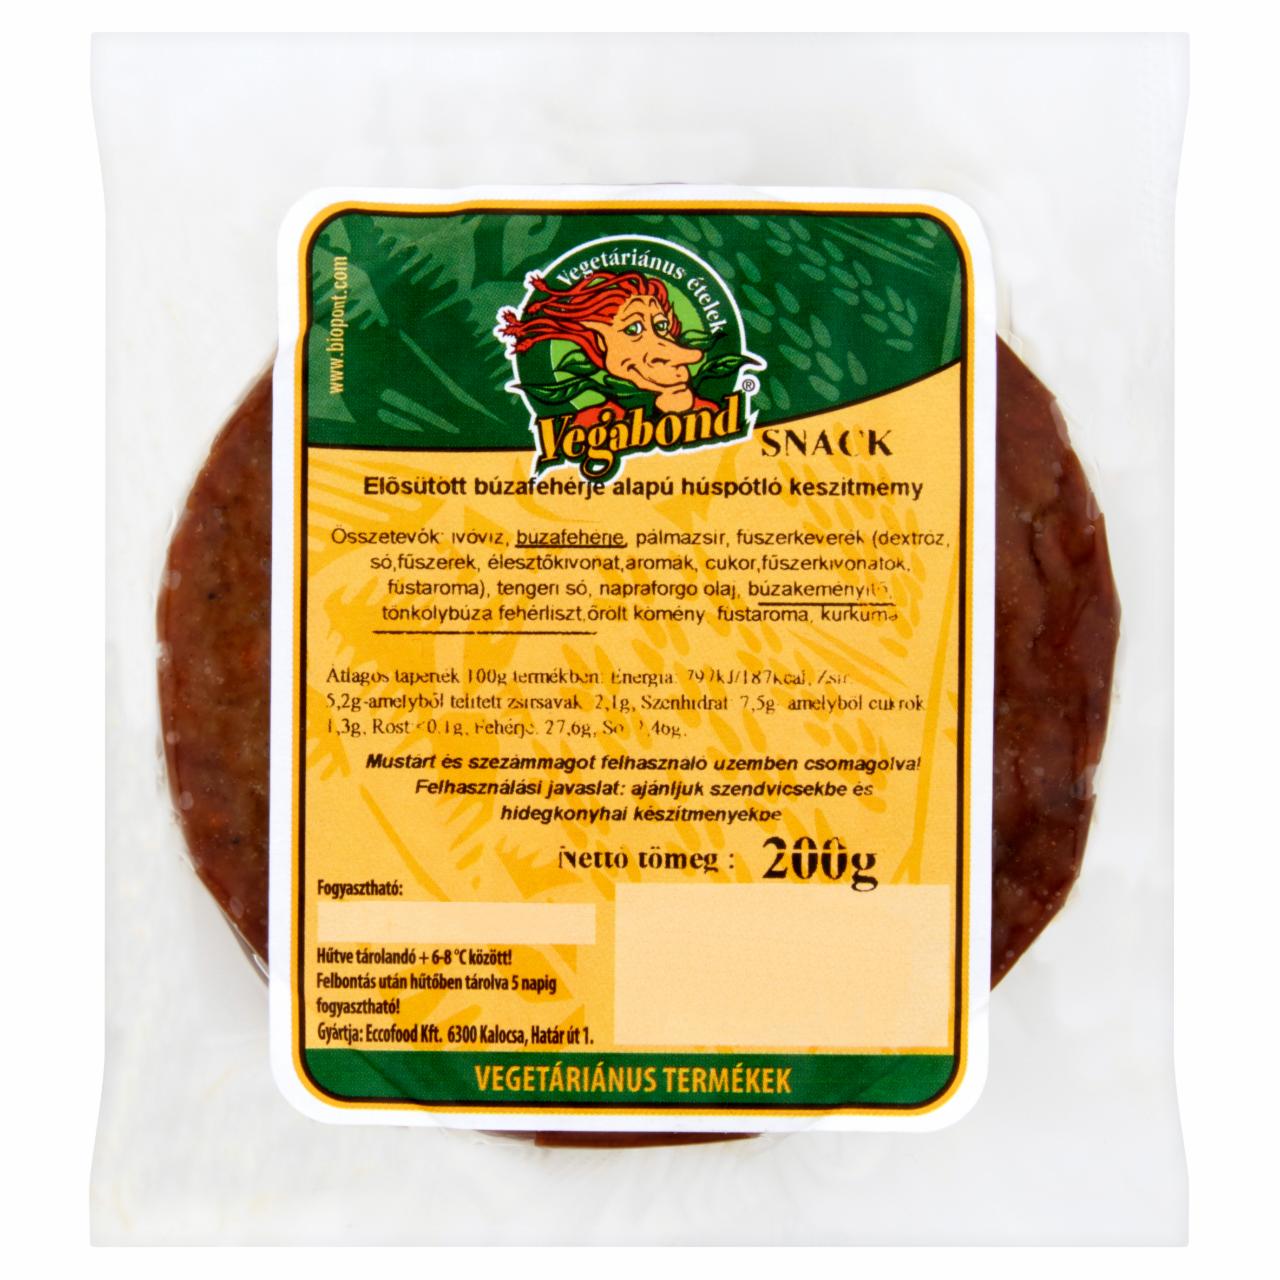 Képek - Vegabond Snack elősütött búzafehérje alapú húspótló készítmény 200 g